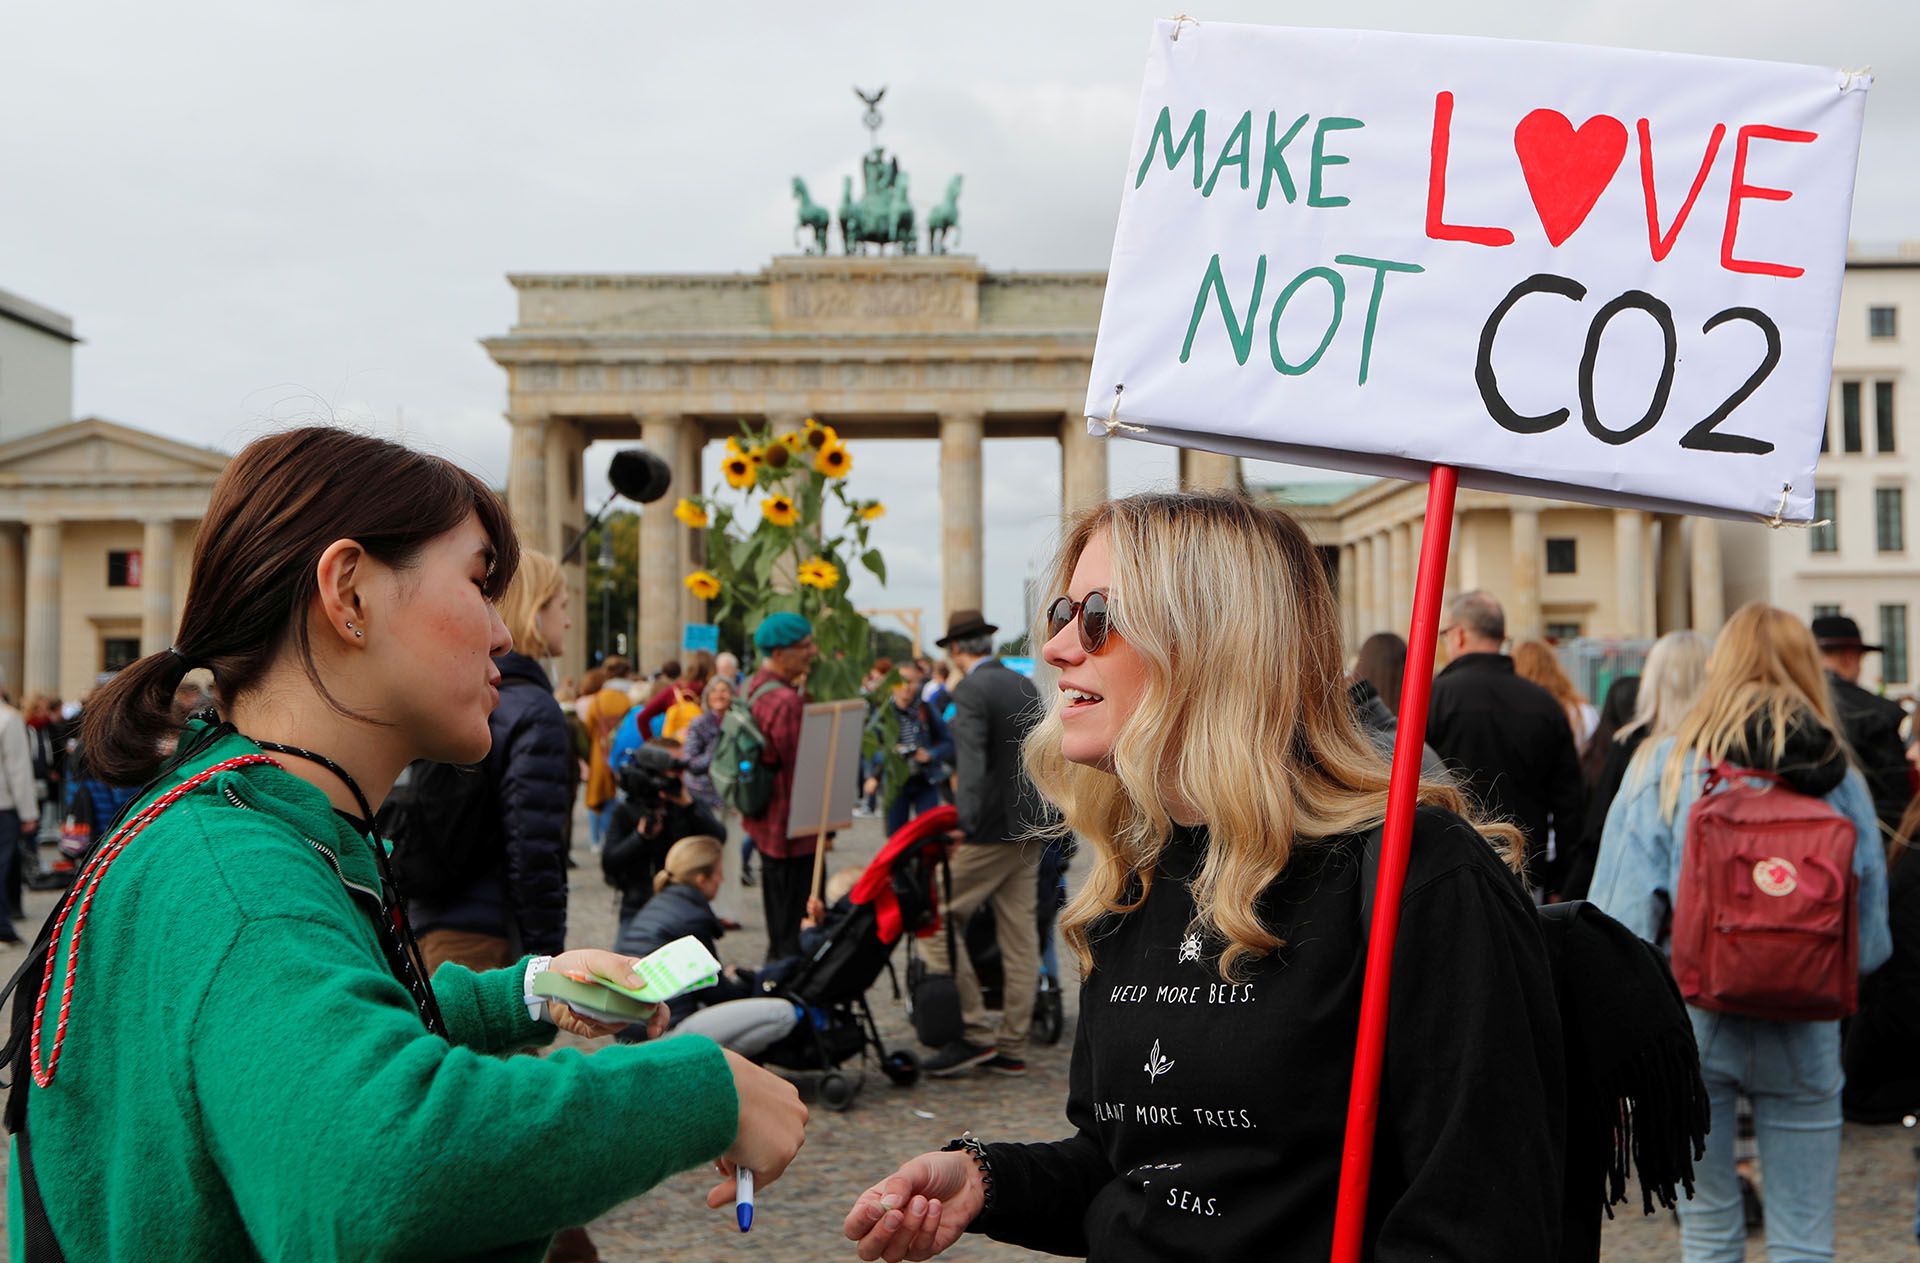 “Hagamos el amor, no dióxido de carbono”, dice el cartel sostenido por una joven alemana (REUTERS/Fabrizio Bensch)